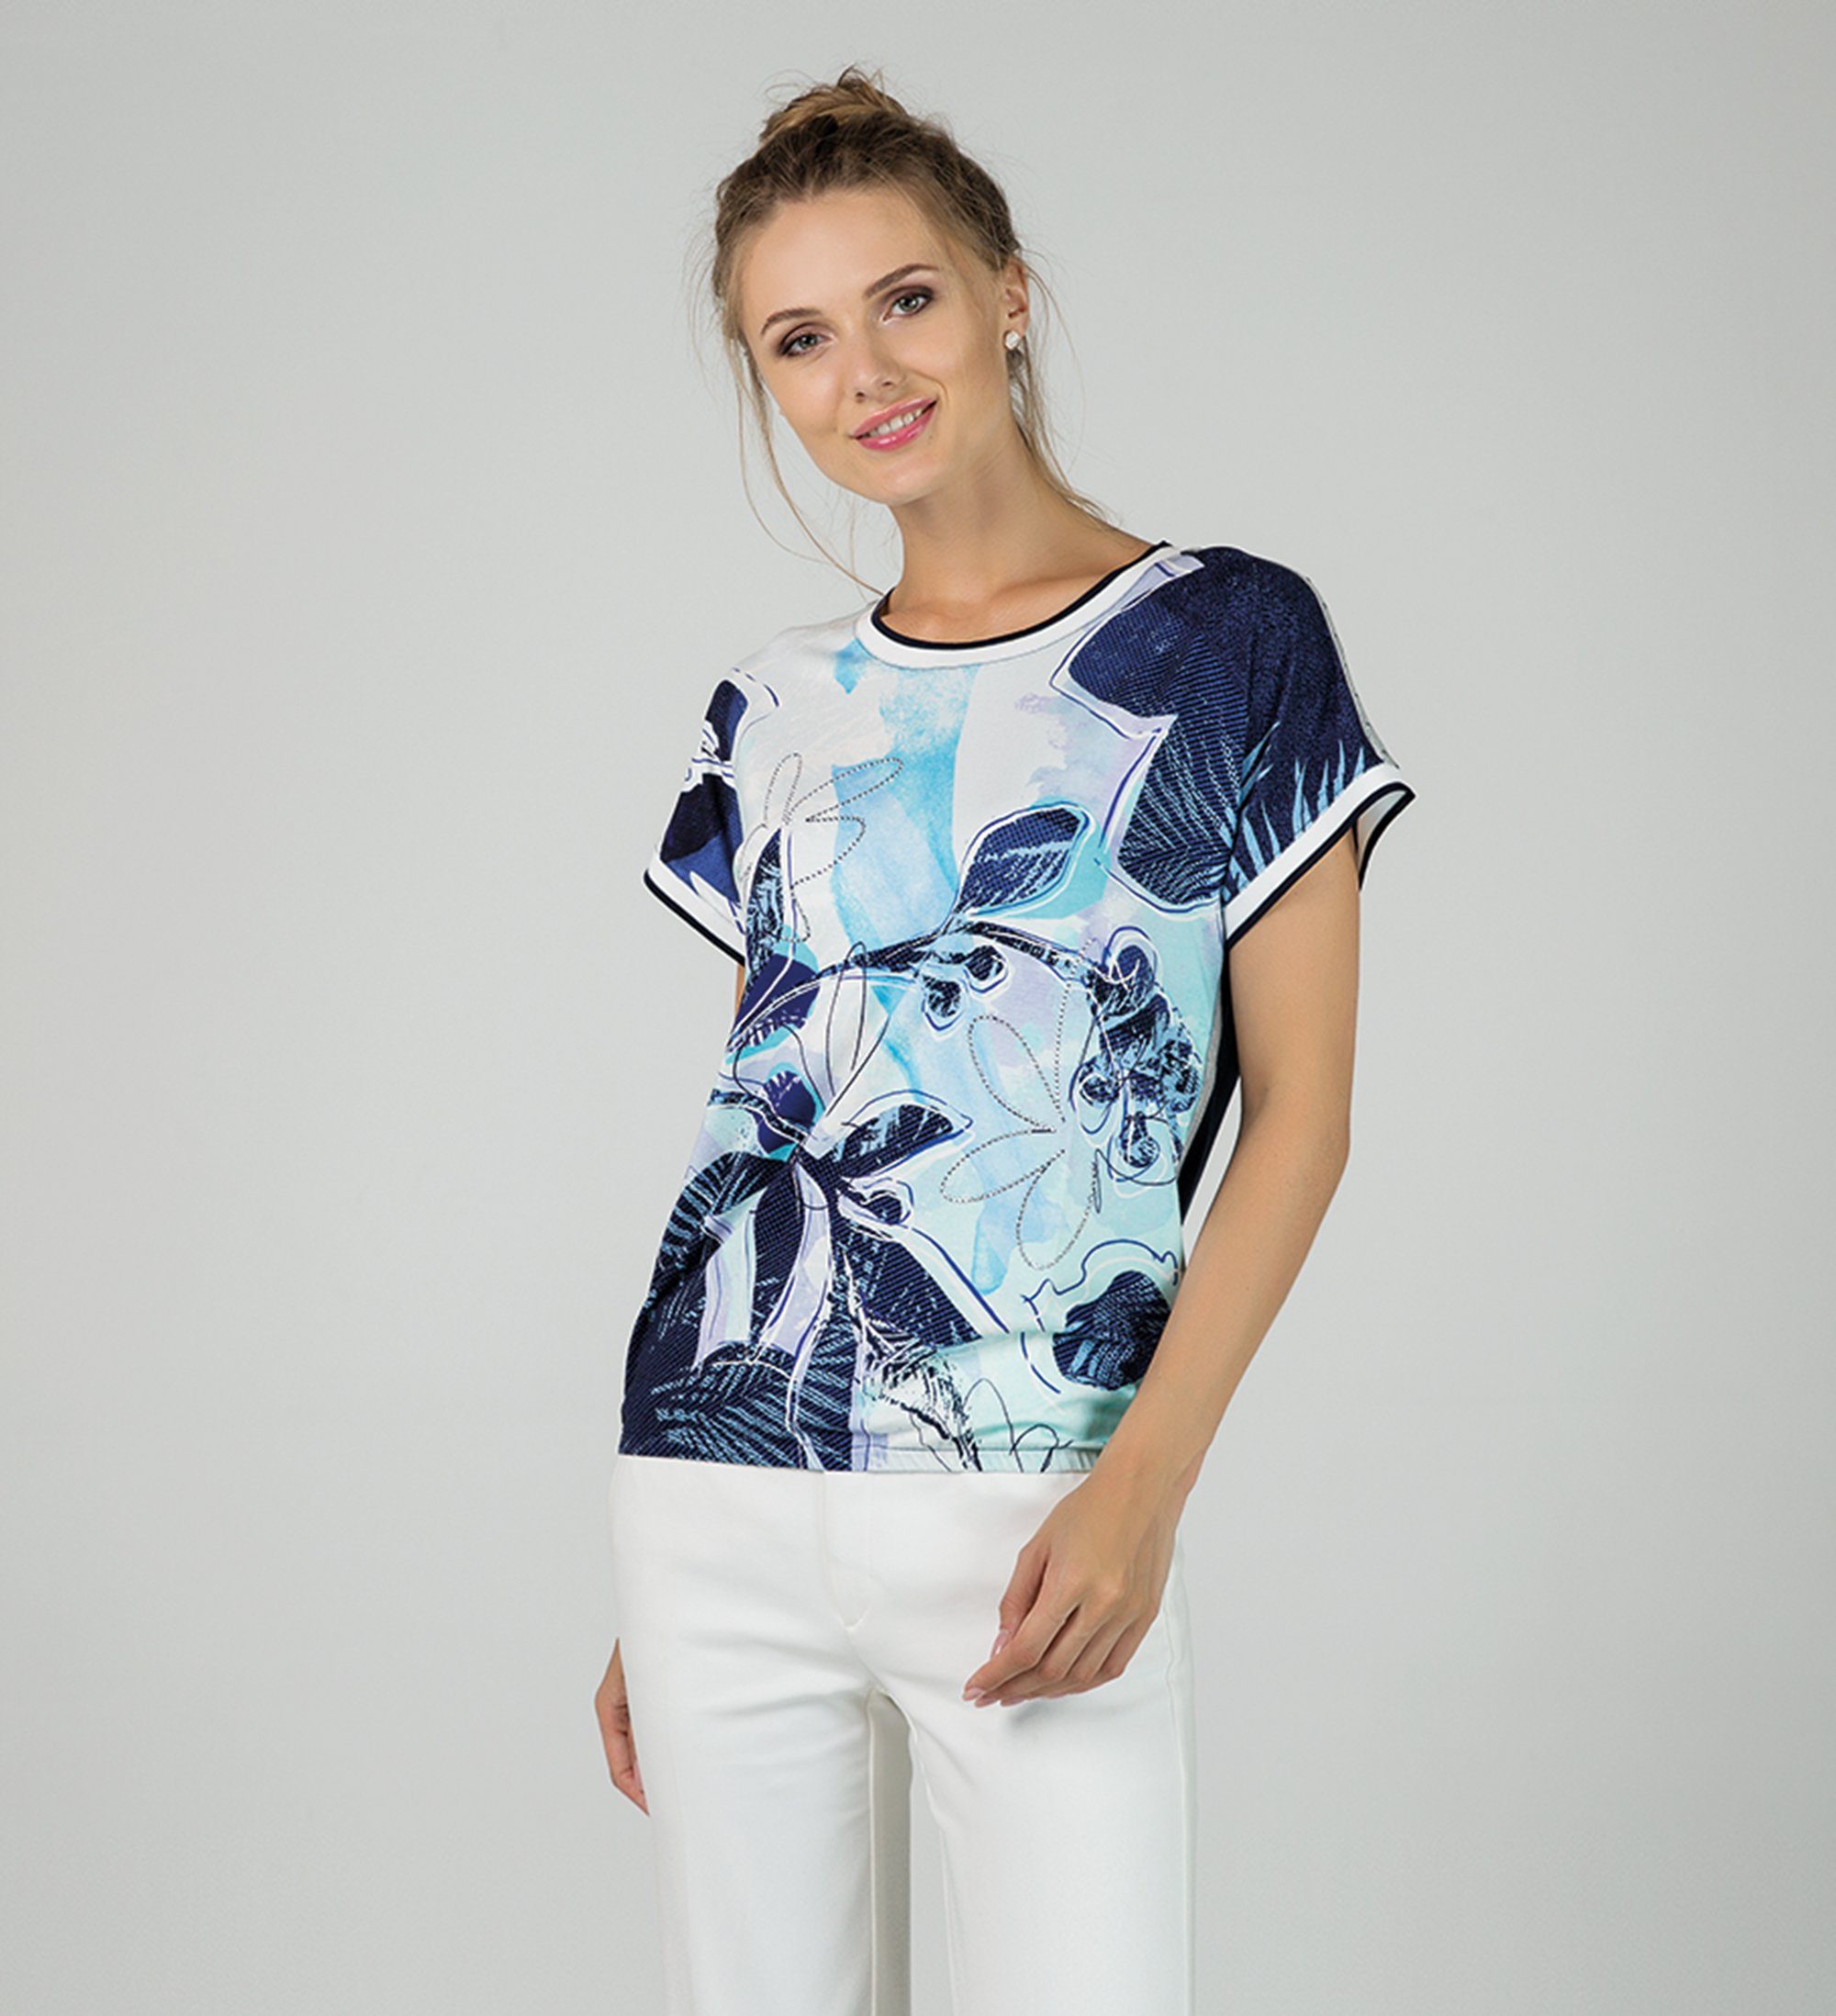 Passioni T-Shirt Bedrucktes T-Shirt sommerlichen Steindekoration, Print Hotfix, in Blautönen mit